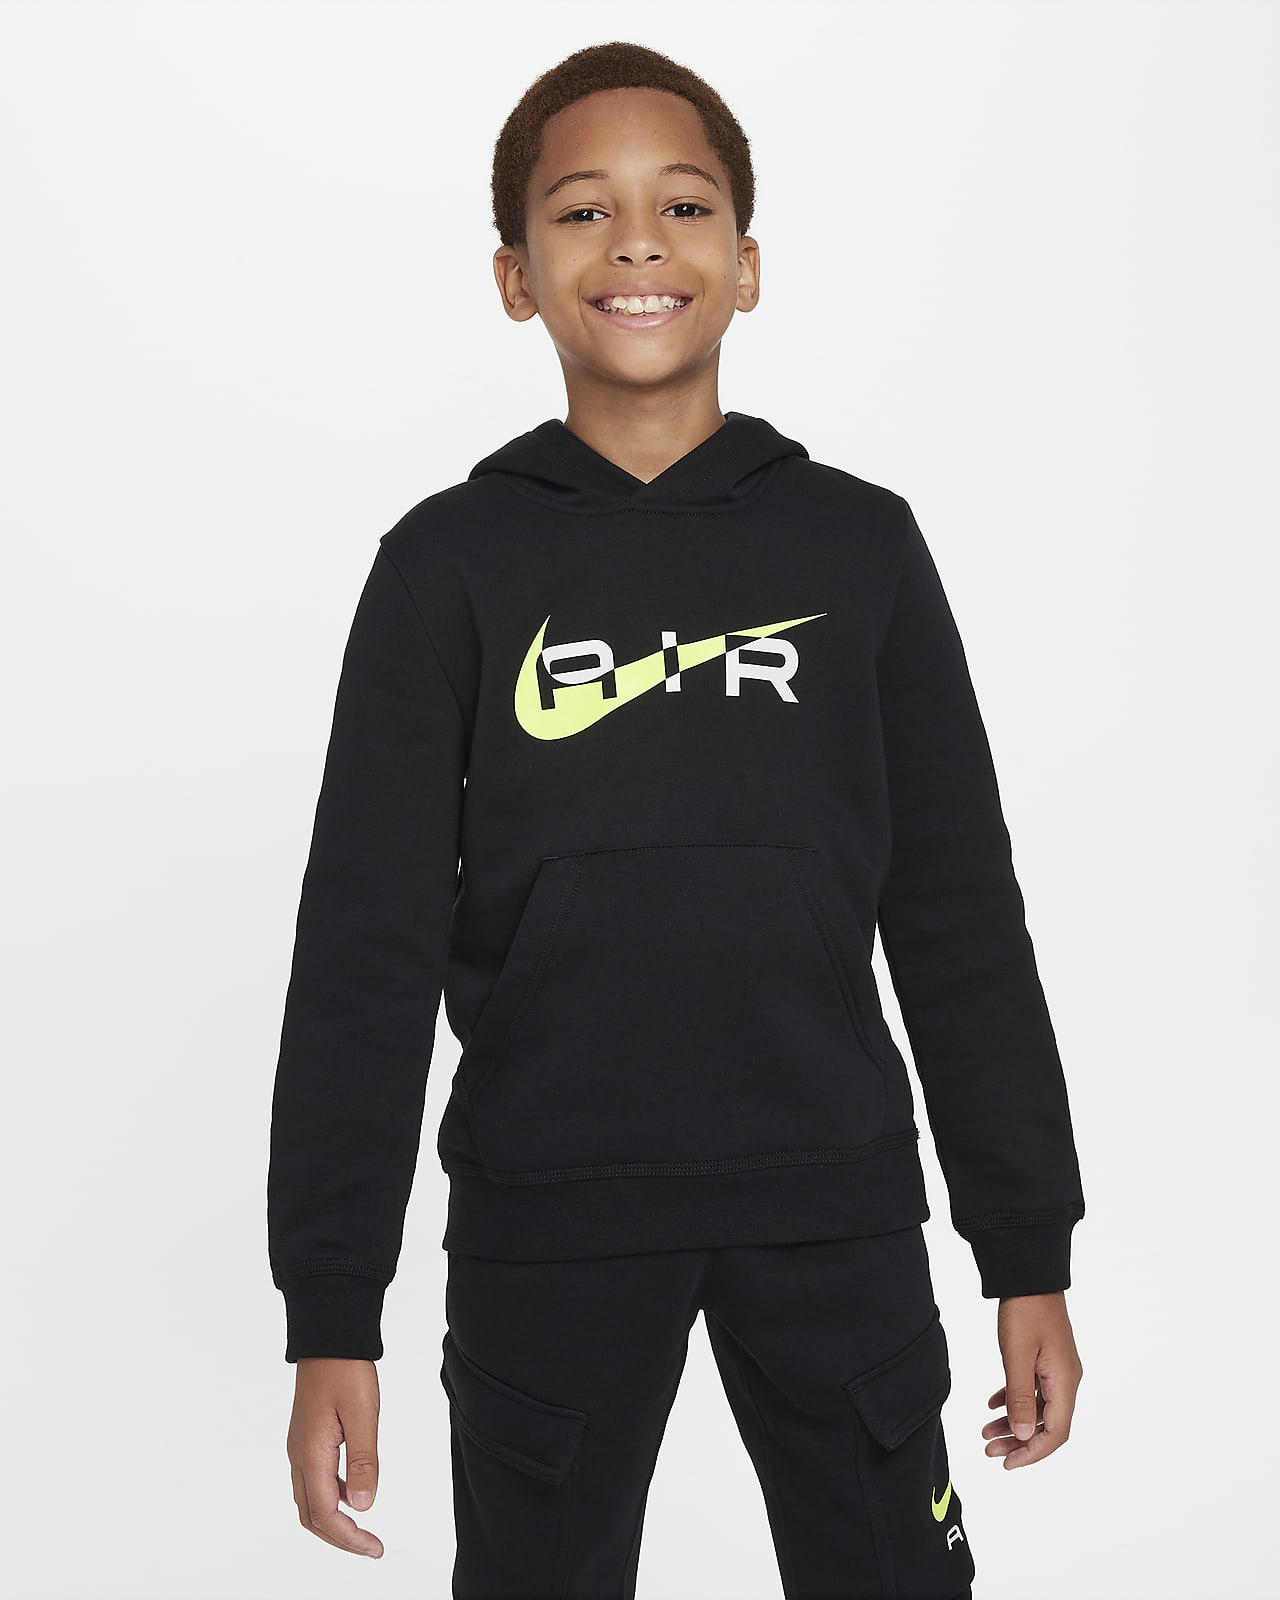 Nike Air Big Kids' Pullover Fleece Hoodie